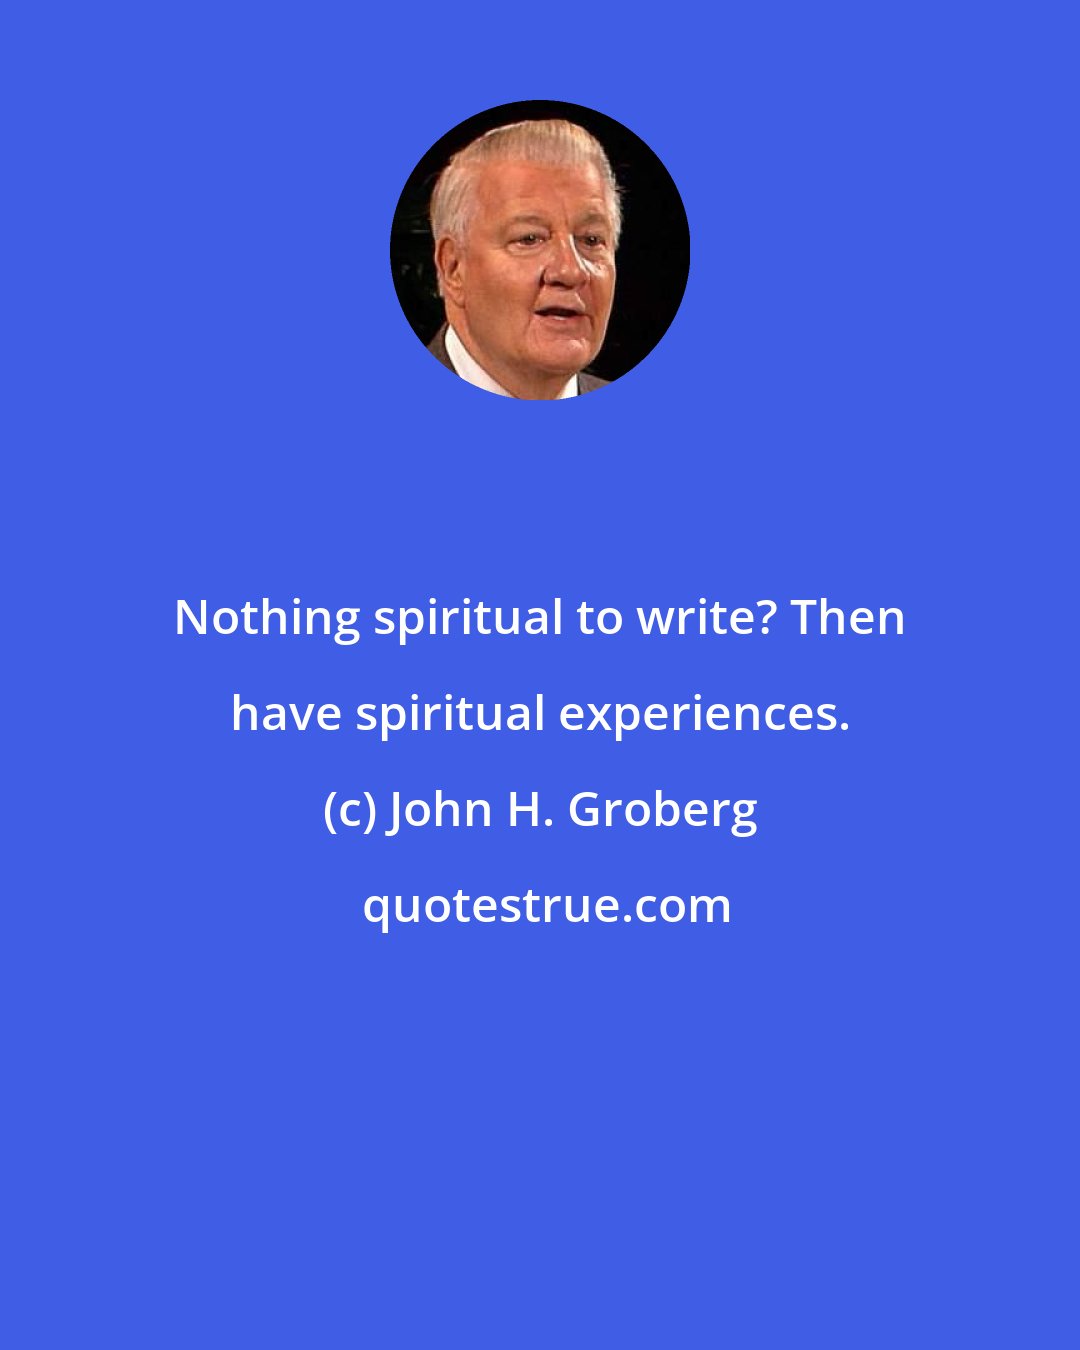 John H. Groberg: Nothing spiritual to write? Then have spiritual experiences.